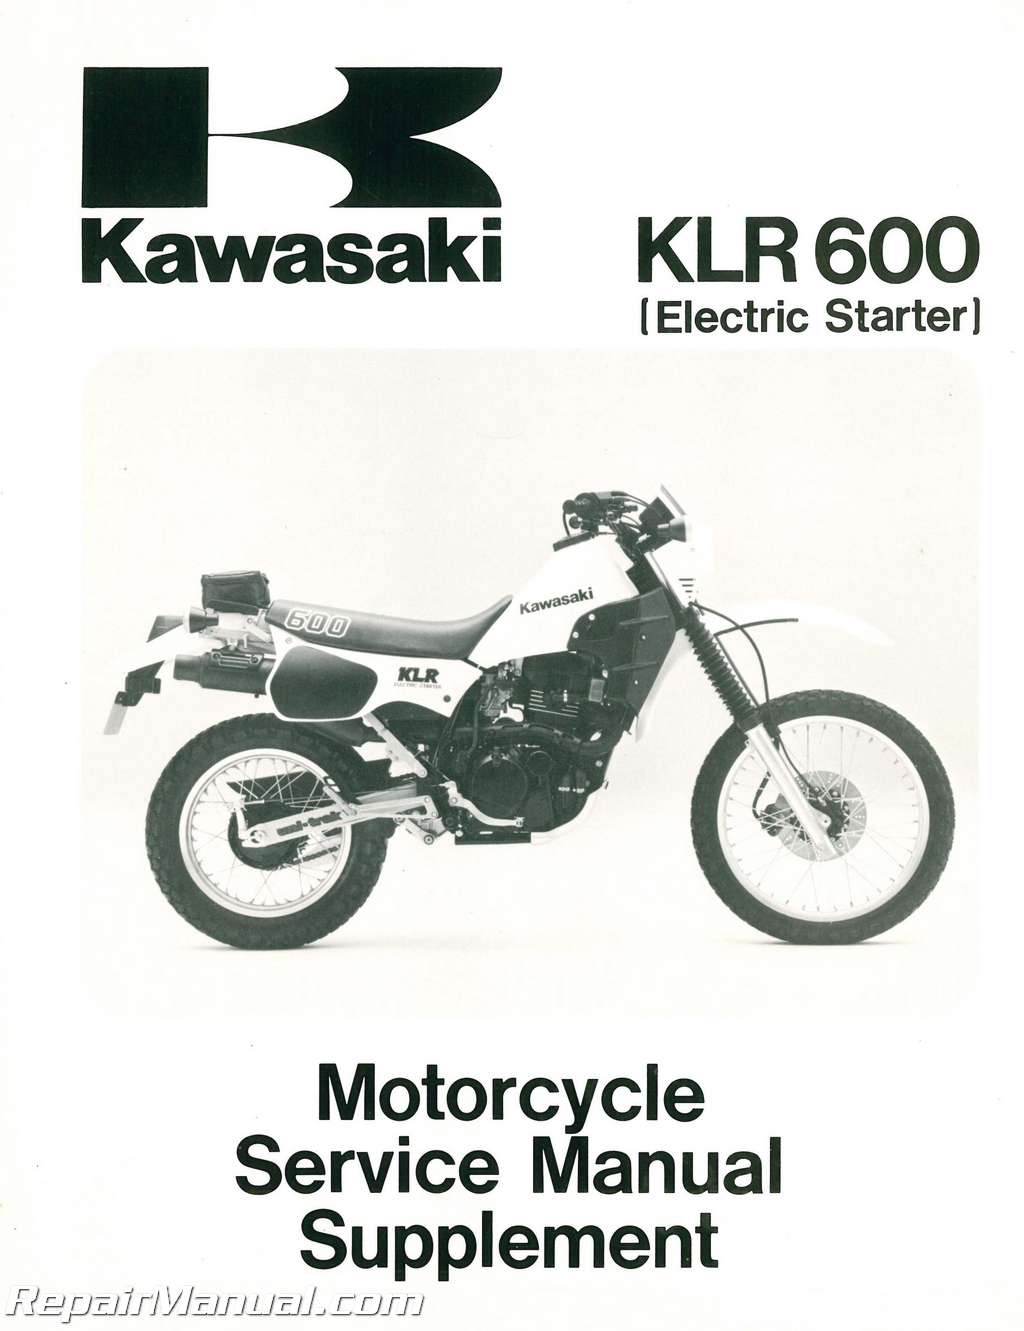 Genuine Kawasaki Dealer Service Repair Manual Supplement KLR600 KL600-B1 1985 85 